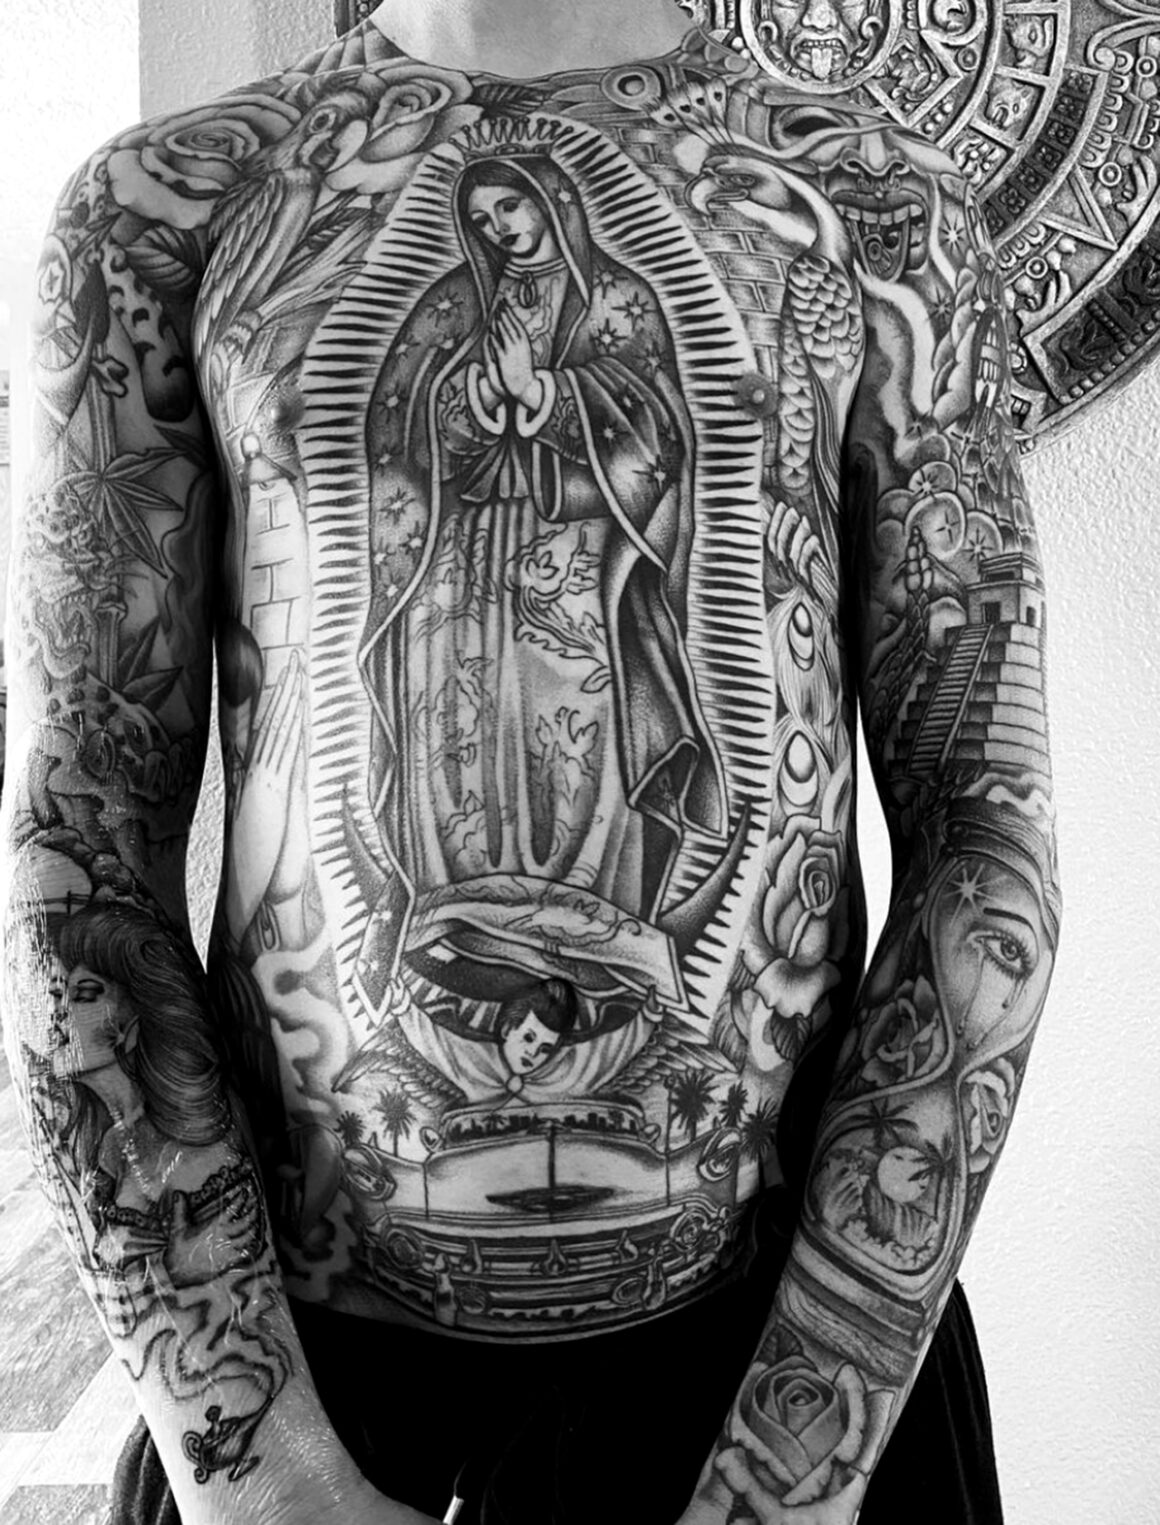 Tattoo uploaded by Tattoodo  Black and grey by Chuco Moreno ChucoMoreno  blackandgrey chicano payasa skull tattoooftheday  Tattoodo